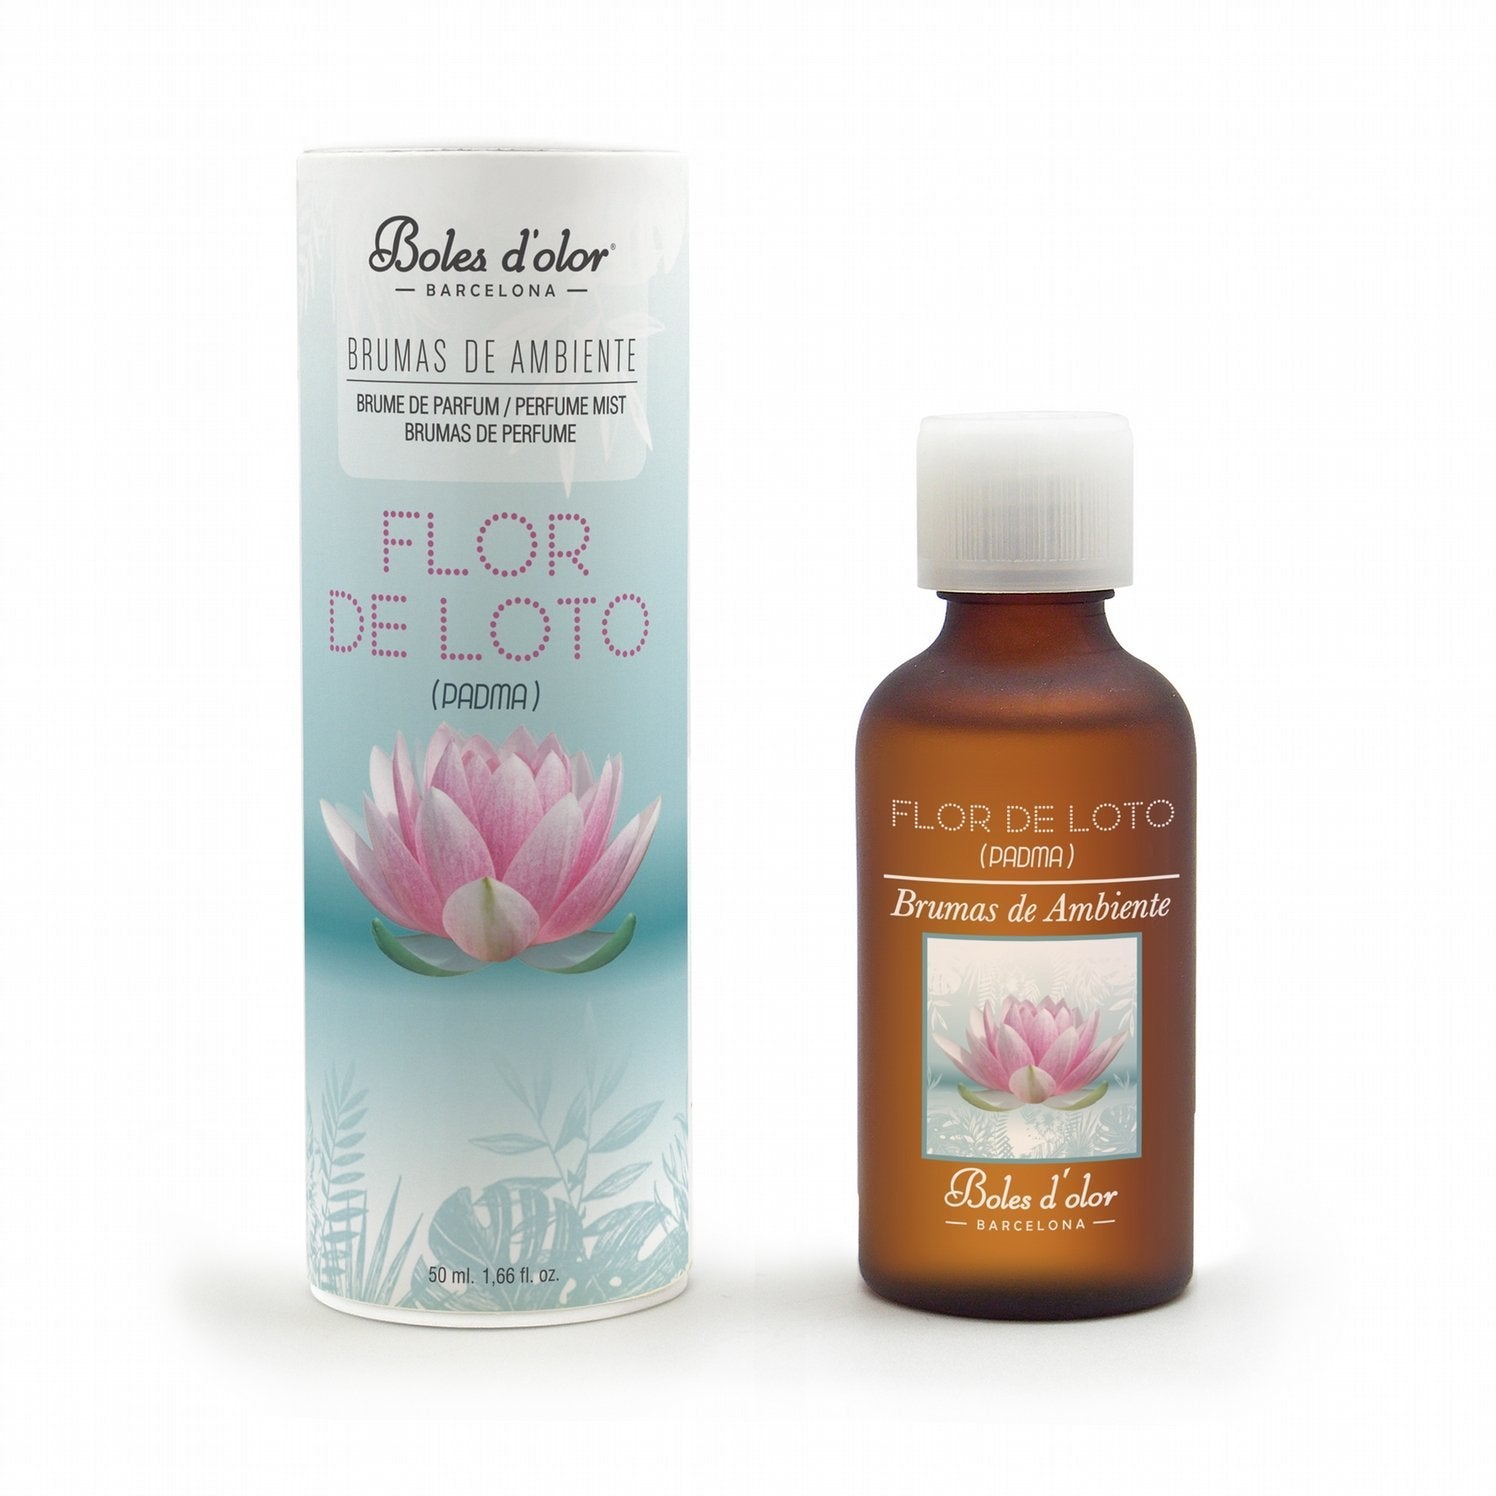 Boles d'olor Lotus Flower (Flor de Loto) Brumas de Ambiente Essence (50ml) - CleanTheAir.co.uk